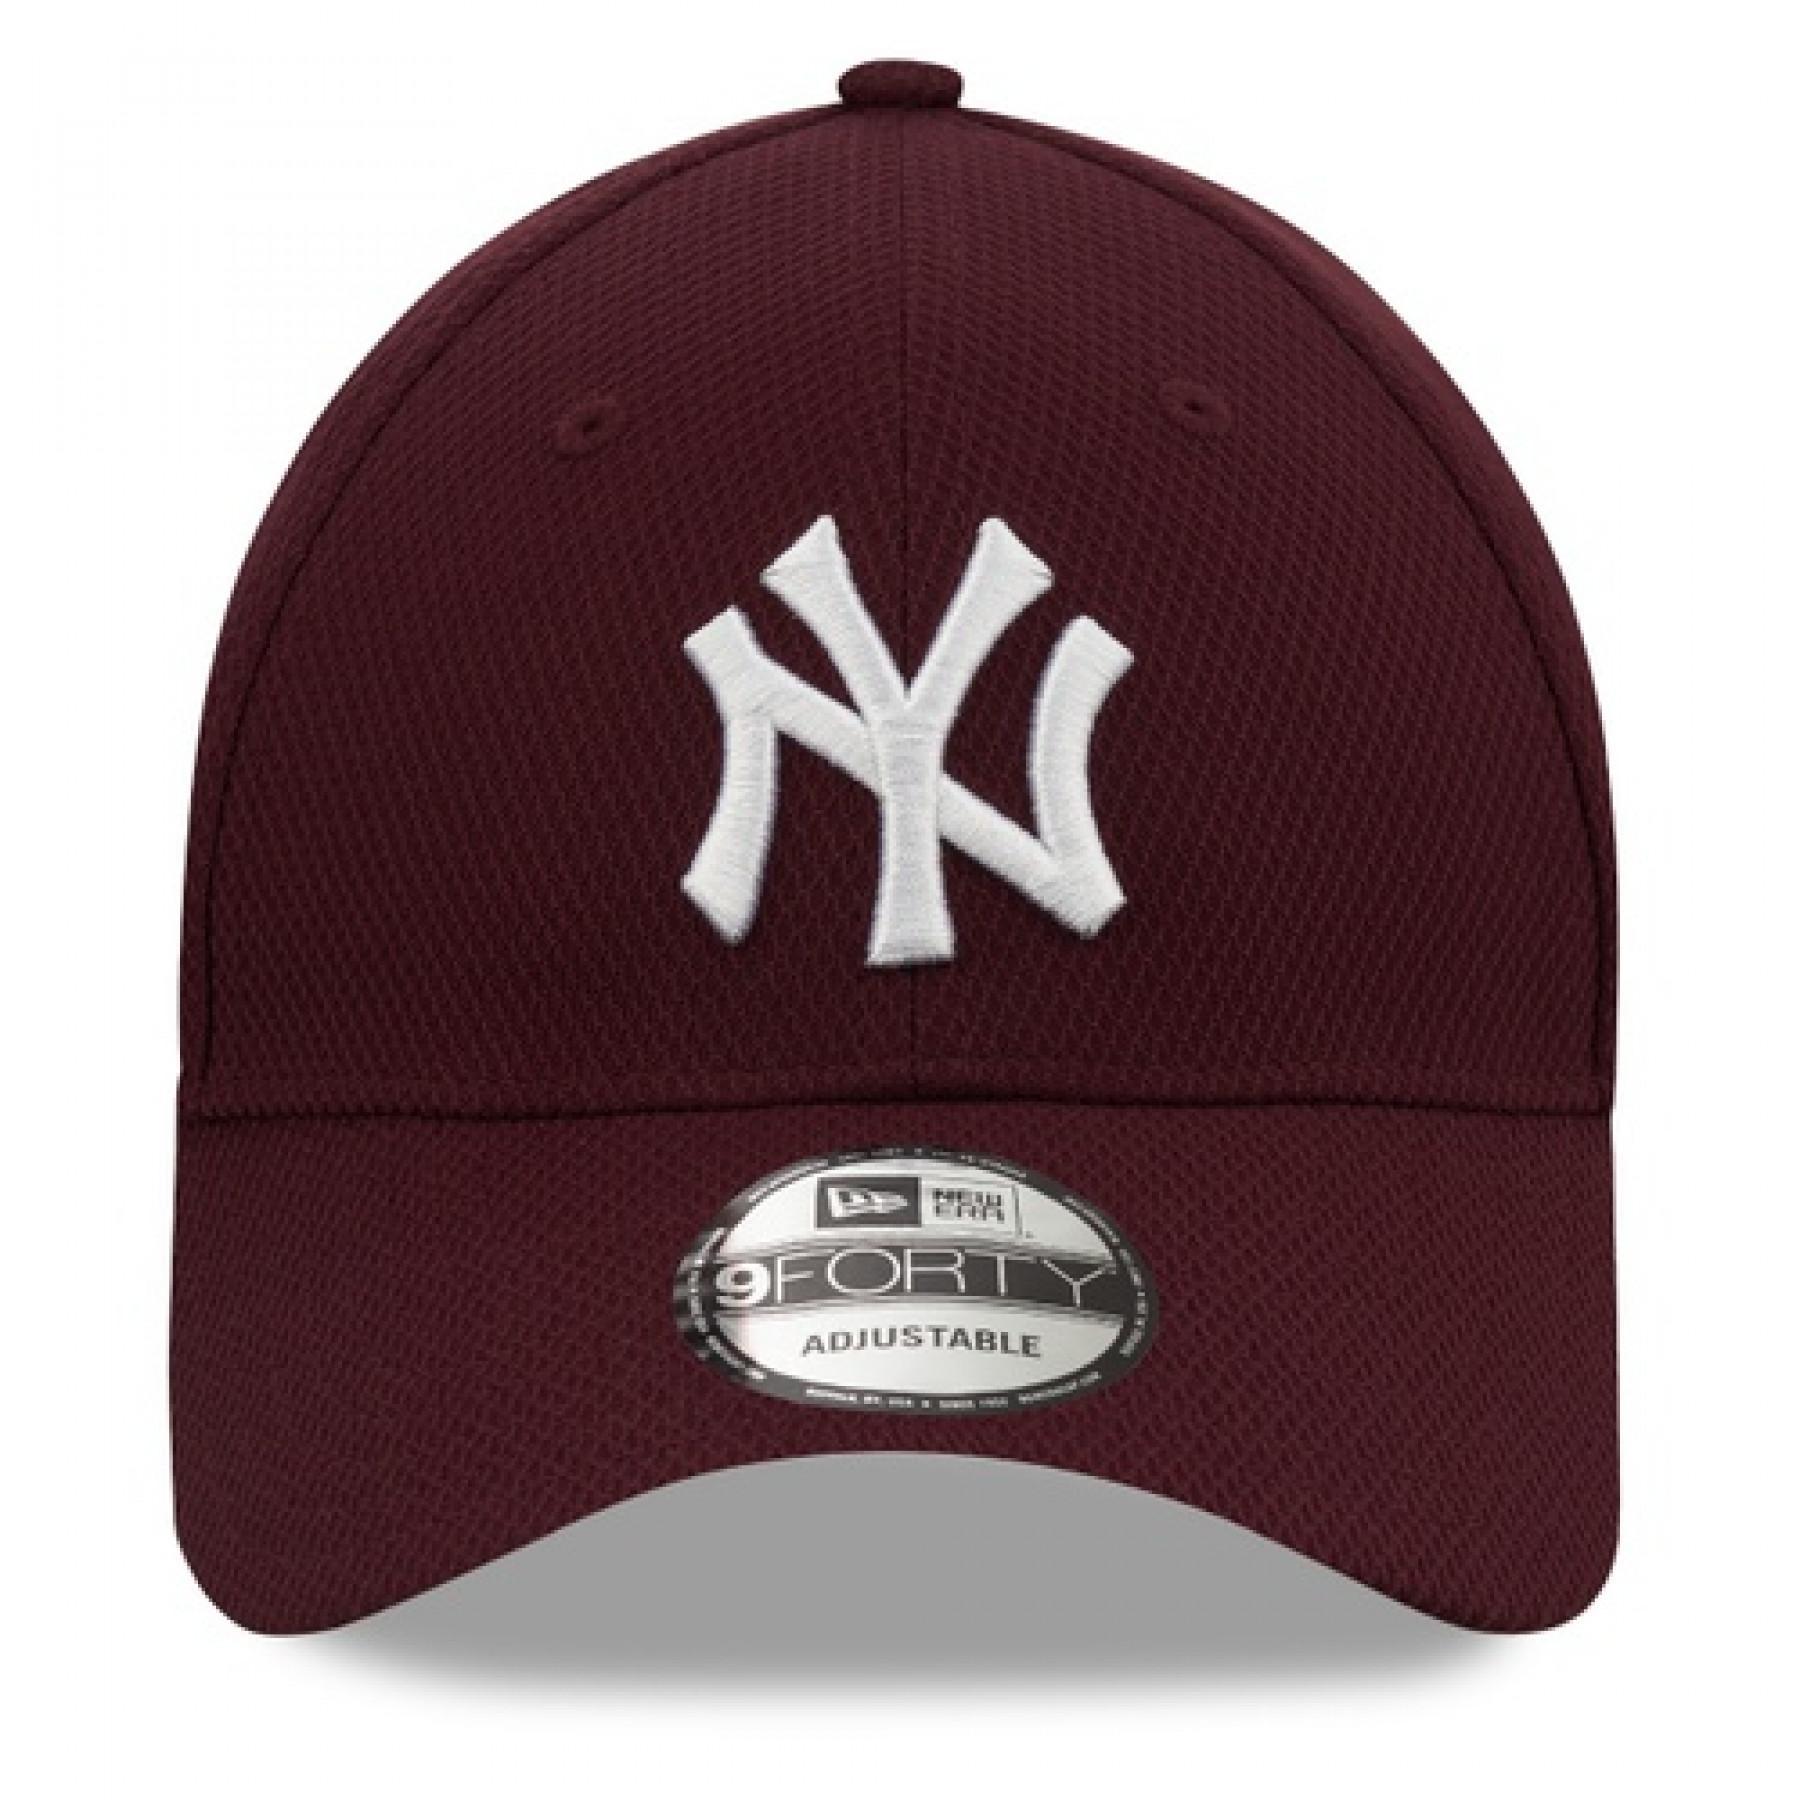 Casquette New Era Diamond Era 9forty New York Yankees Mrnwhi